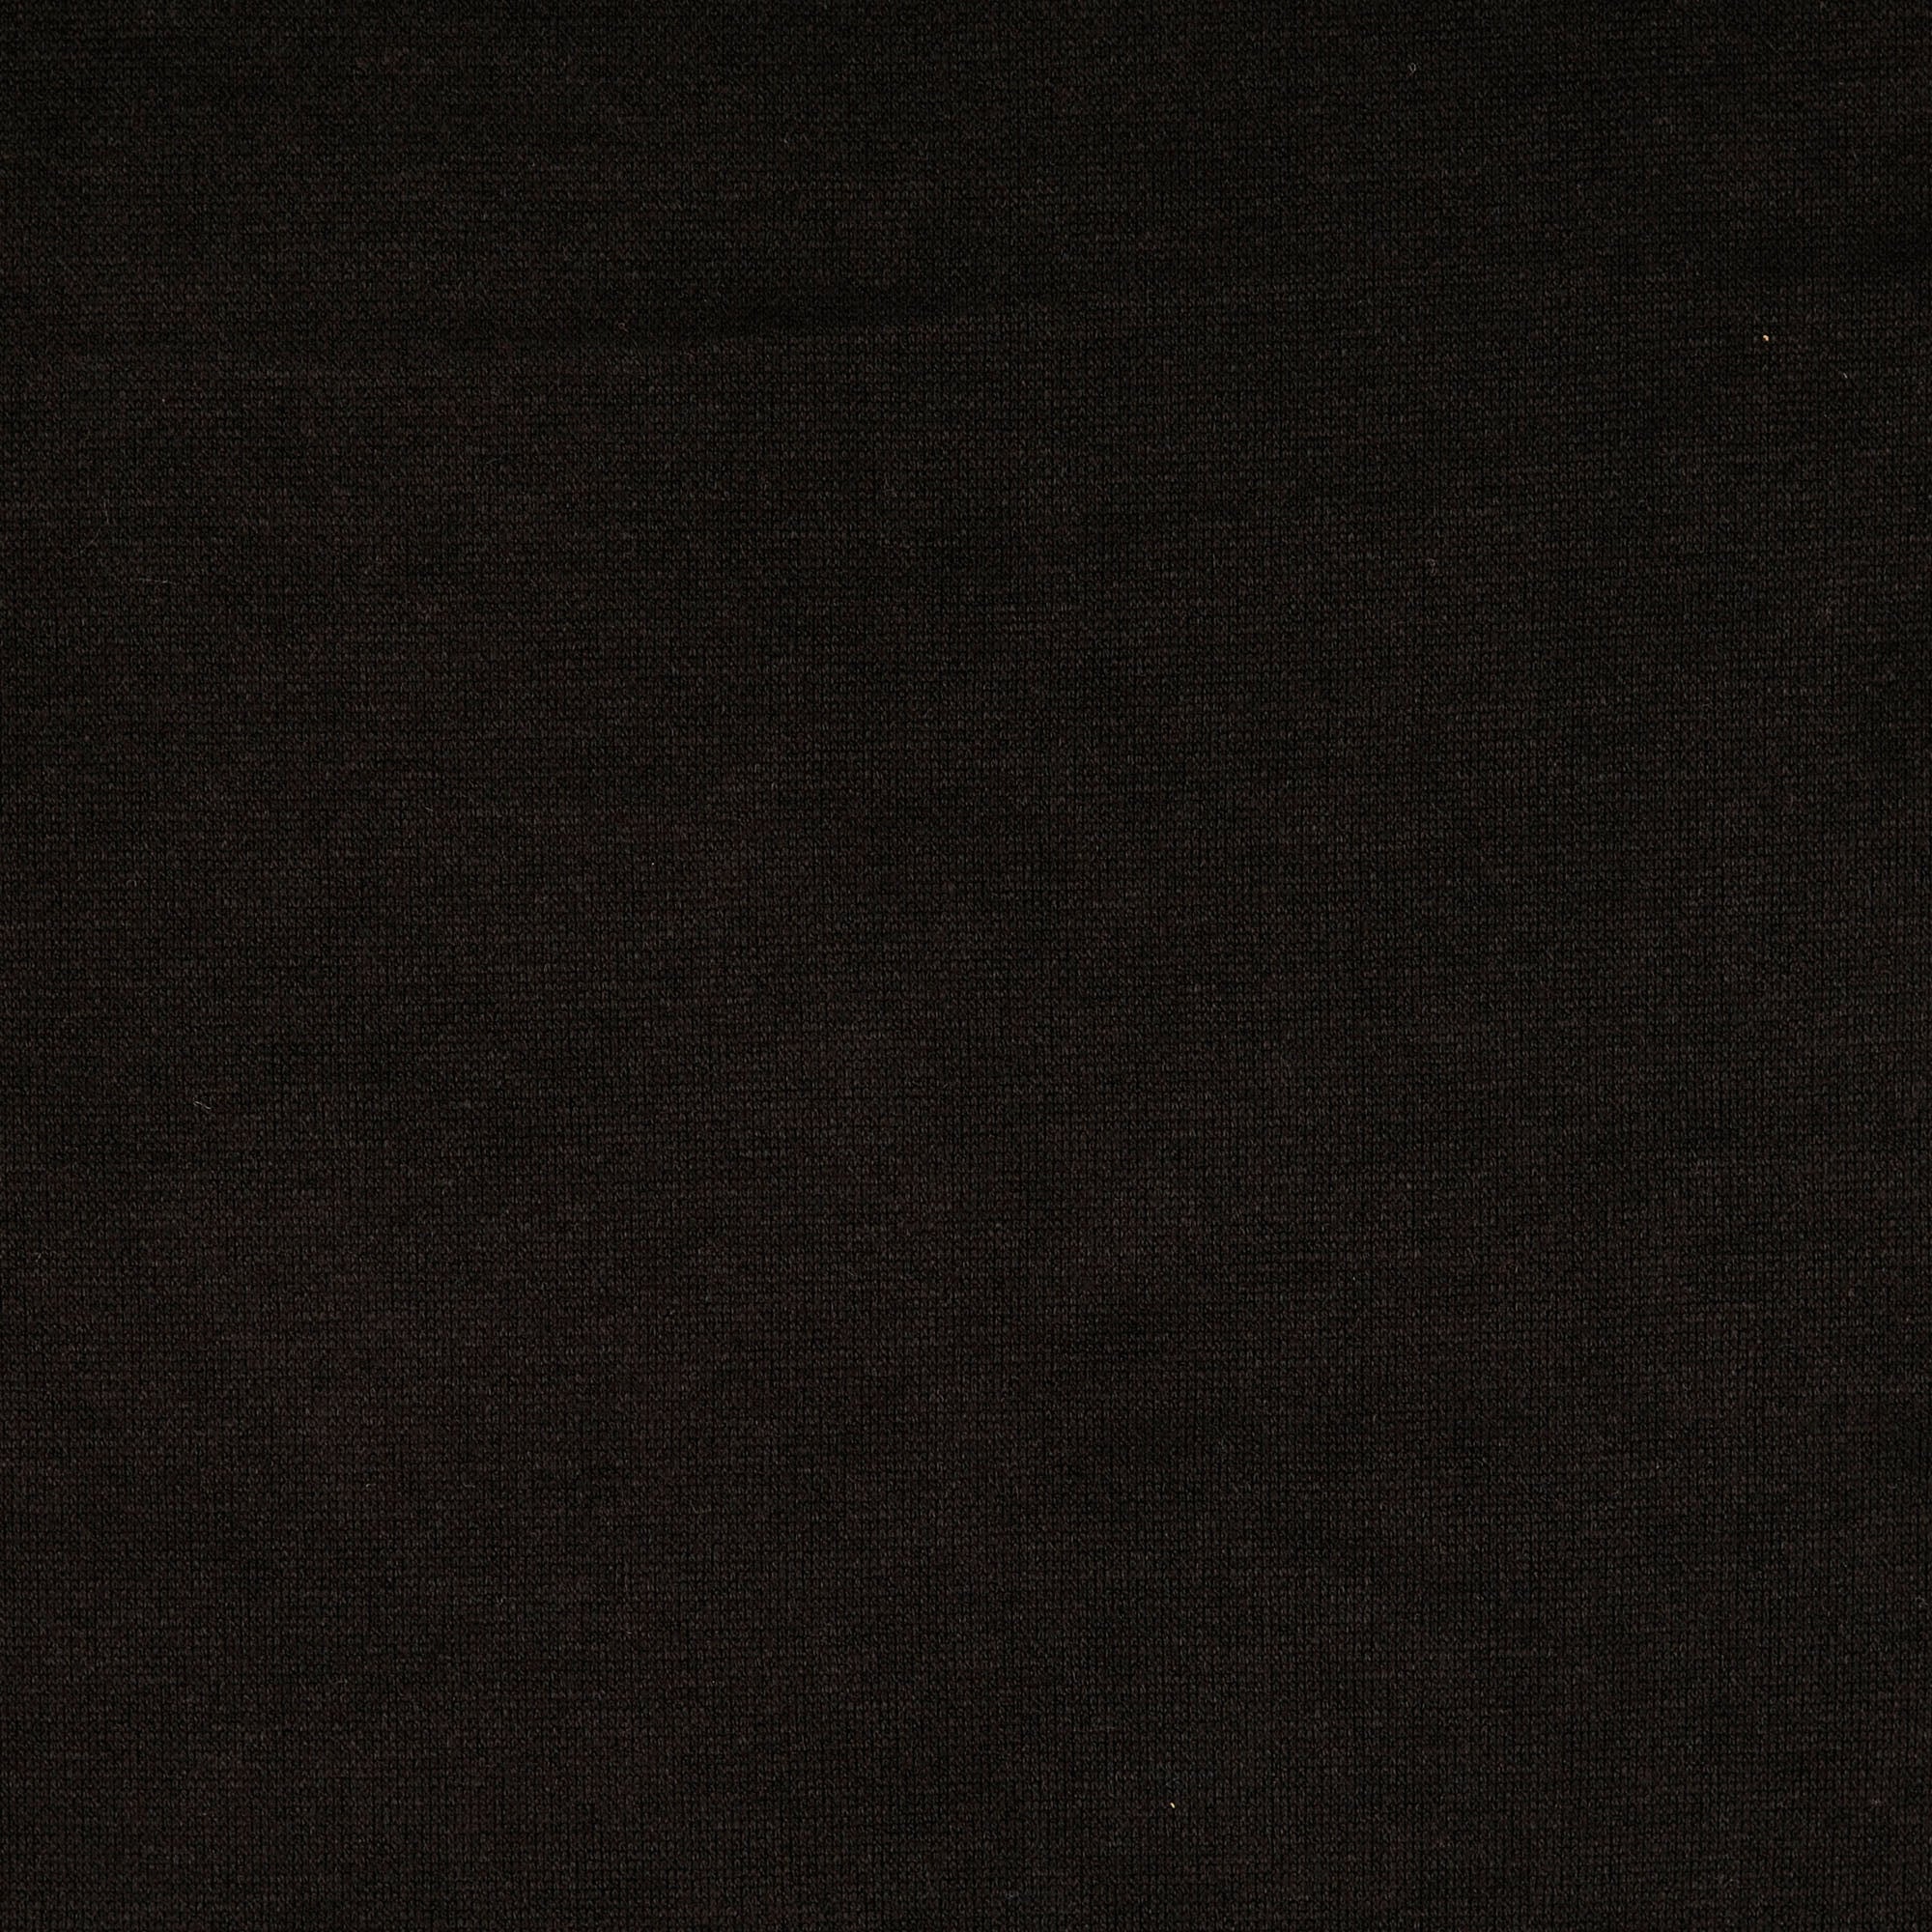 REMNANT 1.8 Metres - Snug Viscose Blend Sweater Knit in Black